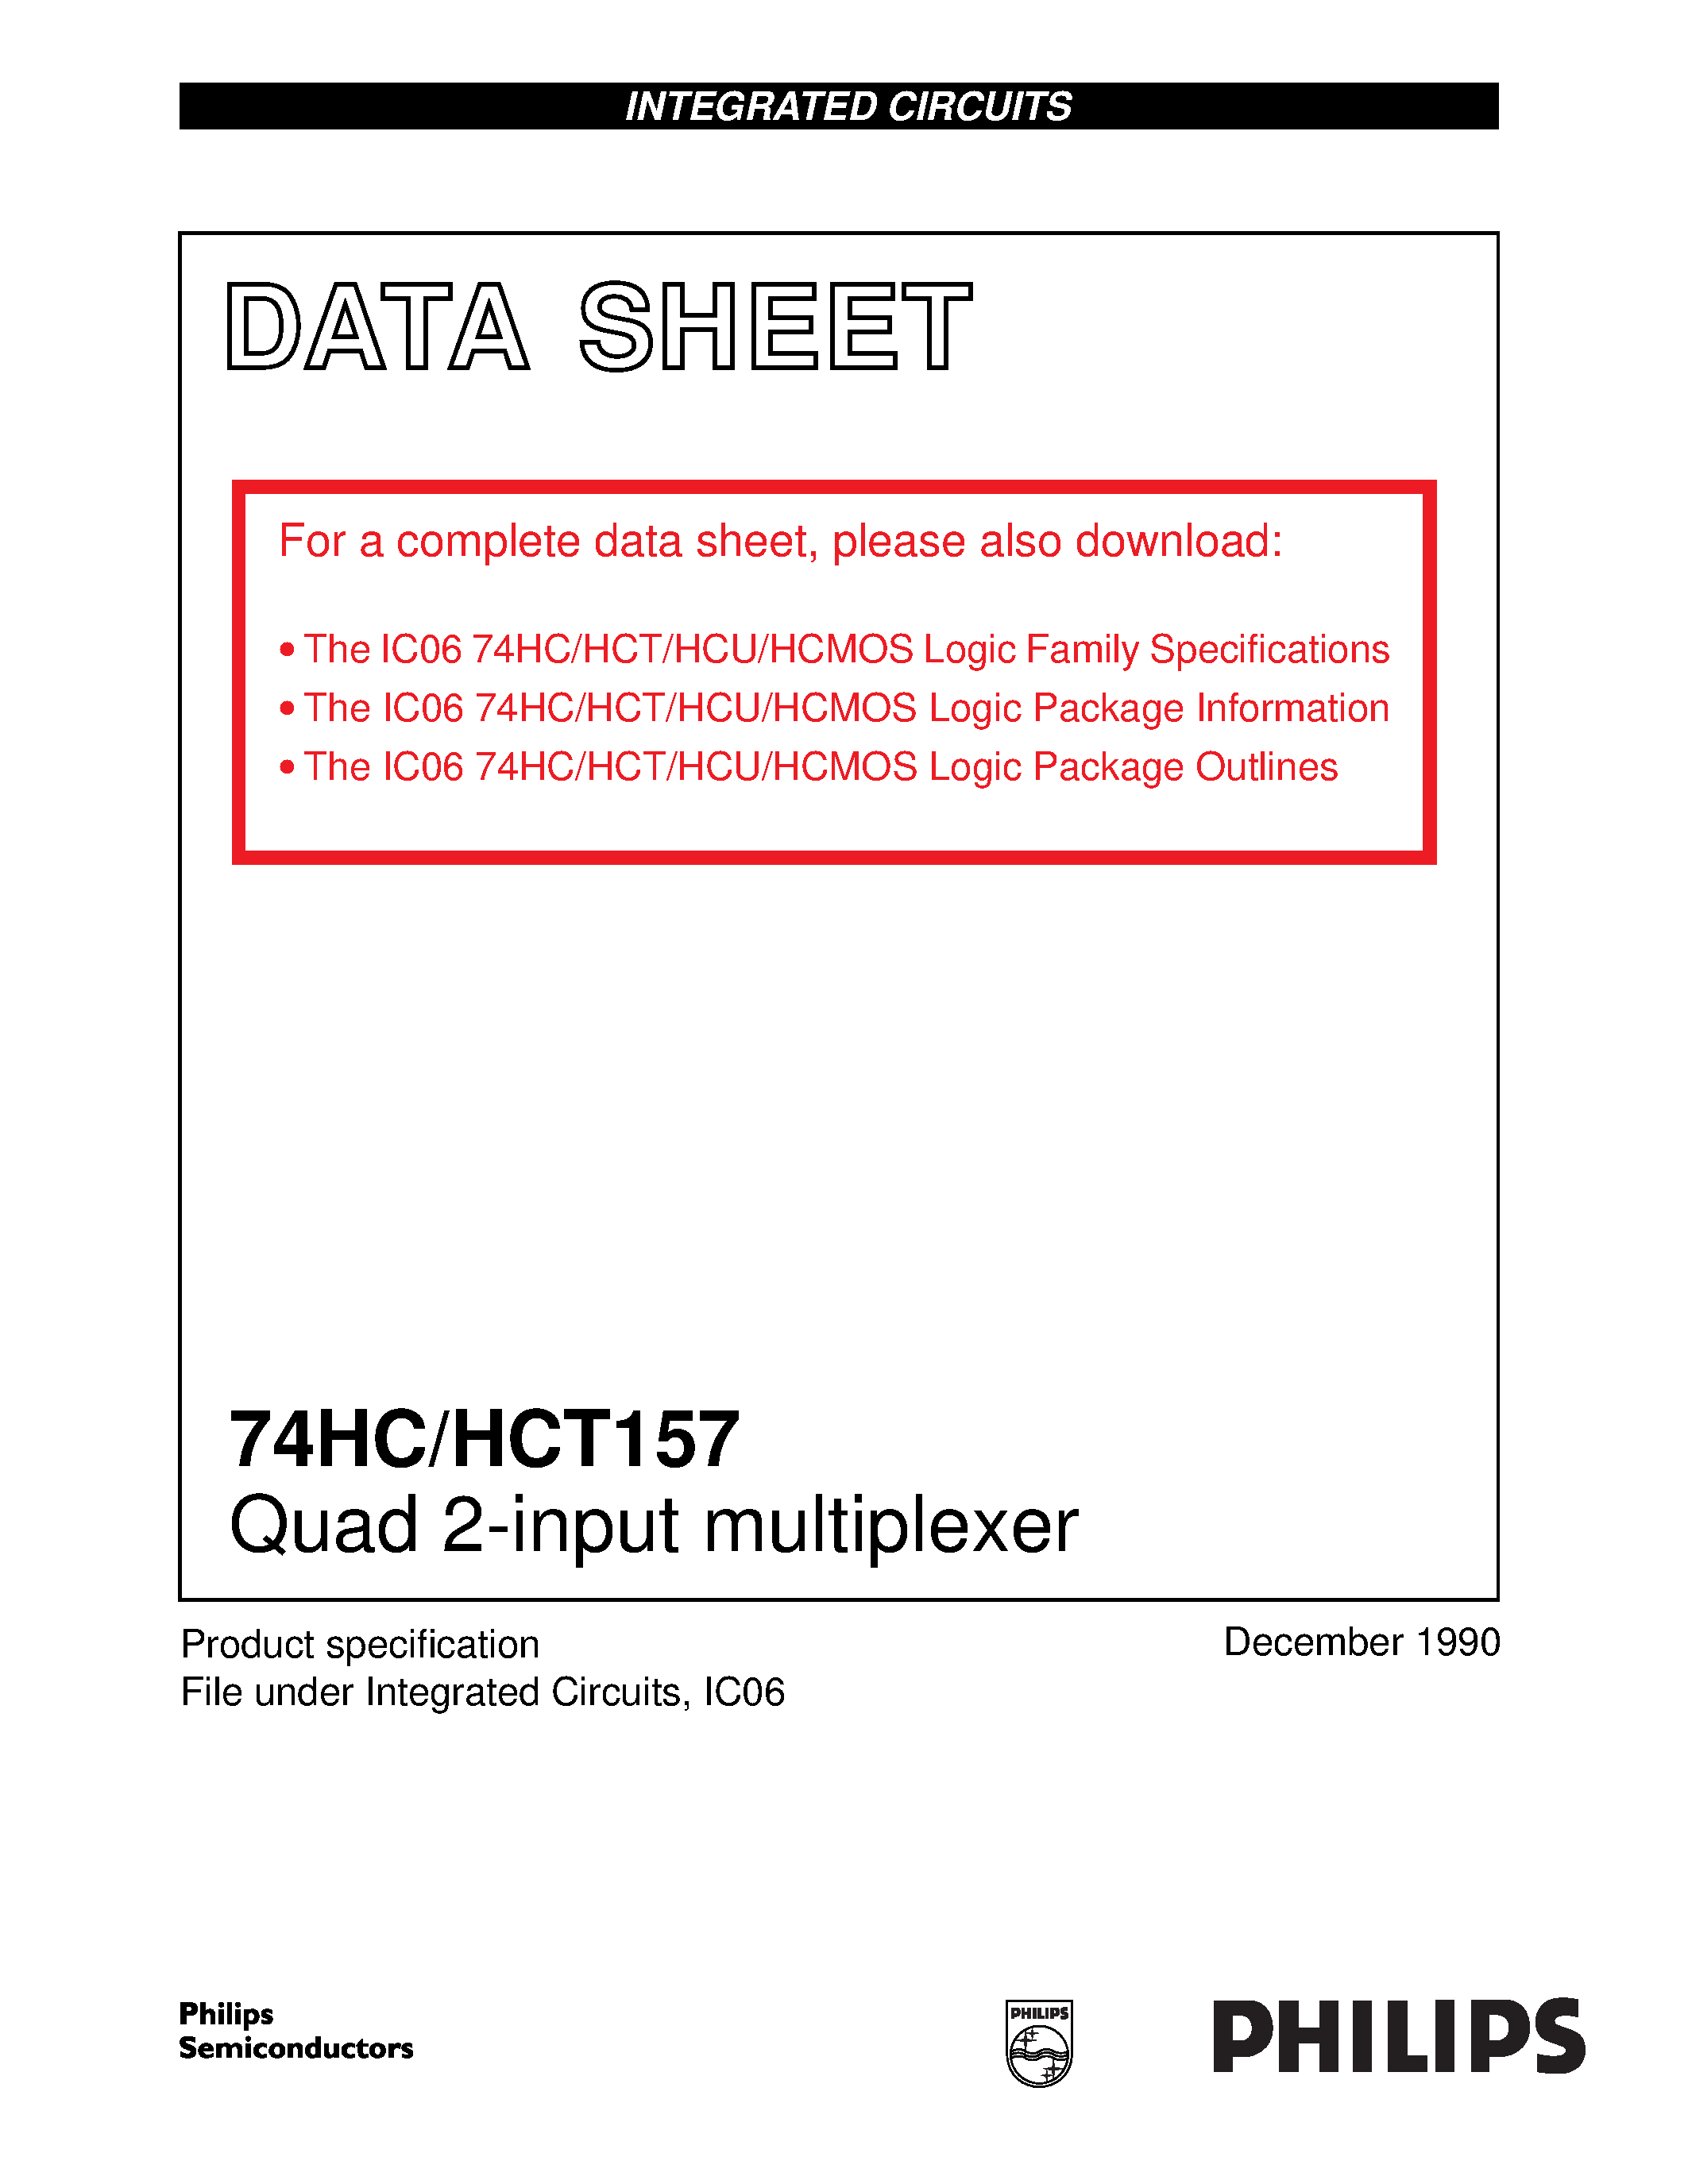 Datasheet 74HCT157 - Quad 2-input multiplexer page 1